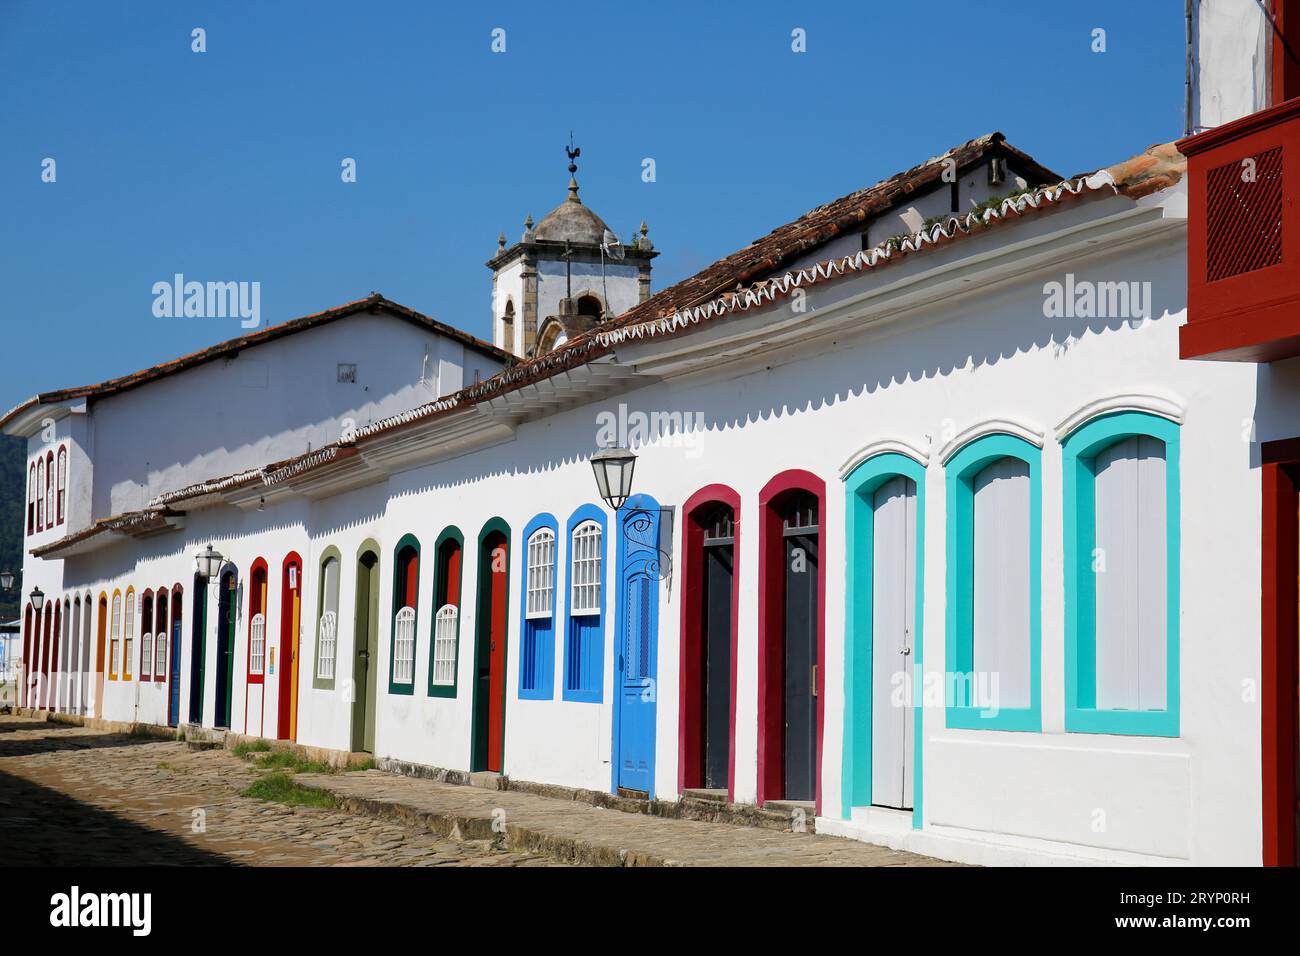 Facciate tipiche delle case al sole con porte e finestre colorate, nel campanile della chiesa sullo sfondo Foto Stock